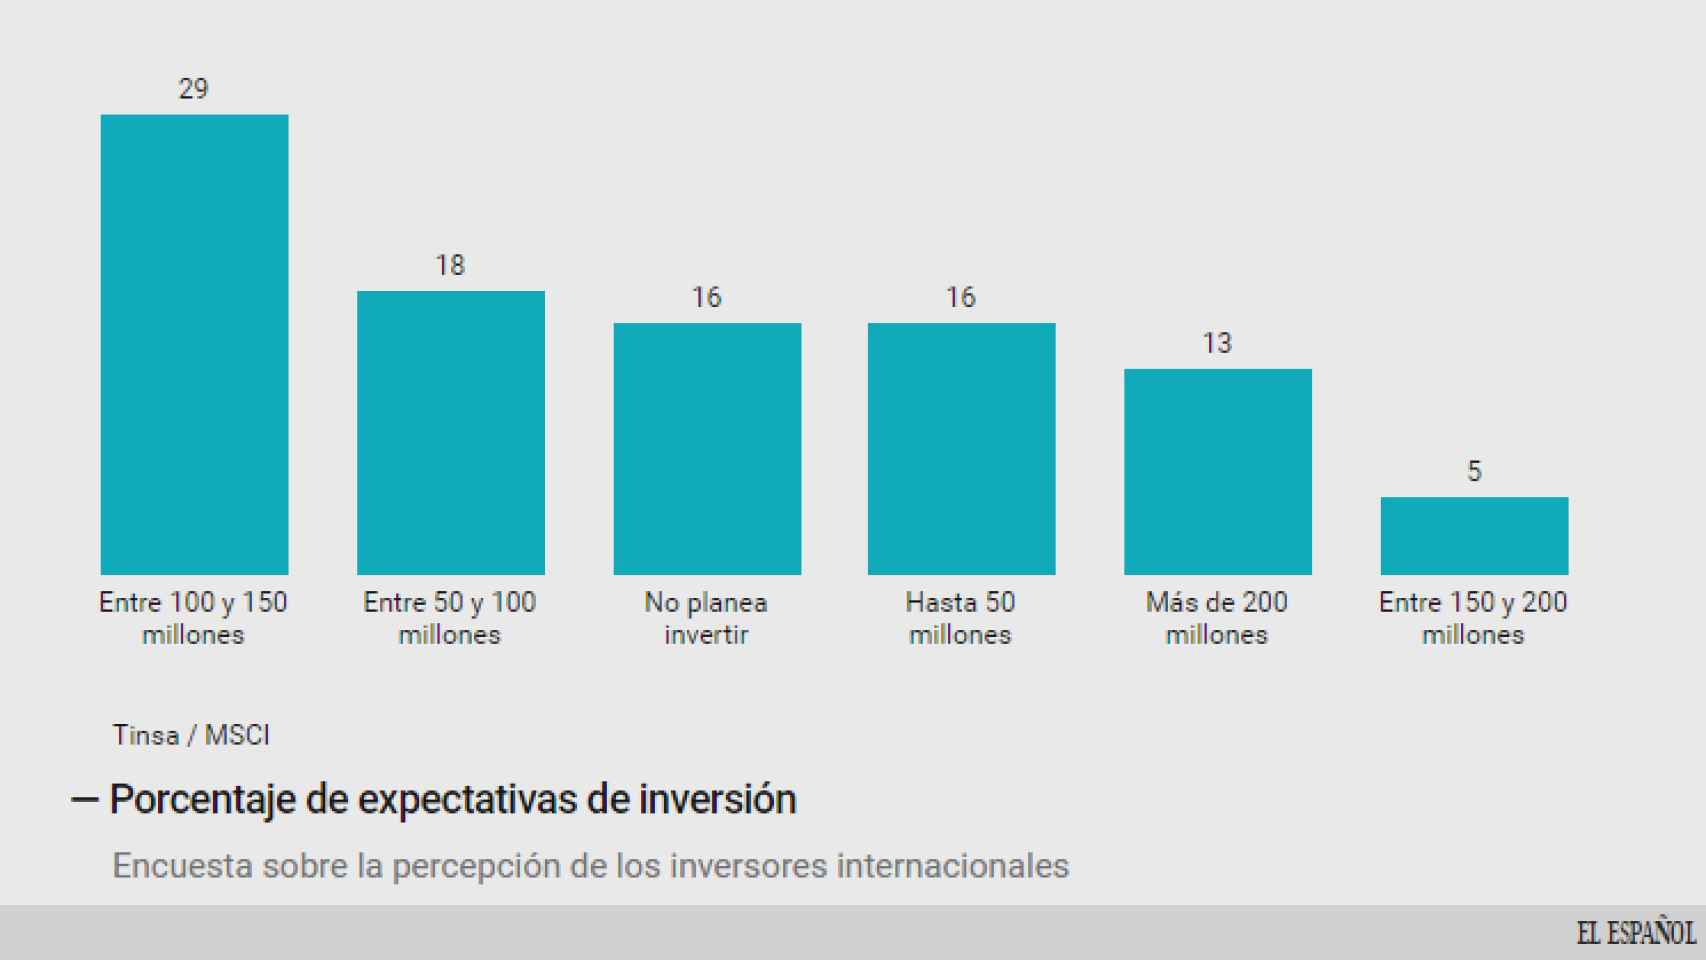 Importe de las inversiones inmobiliarias previstas en España.